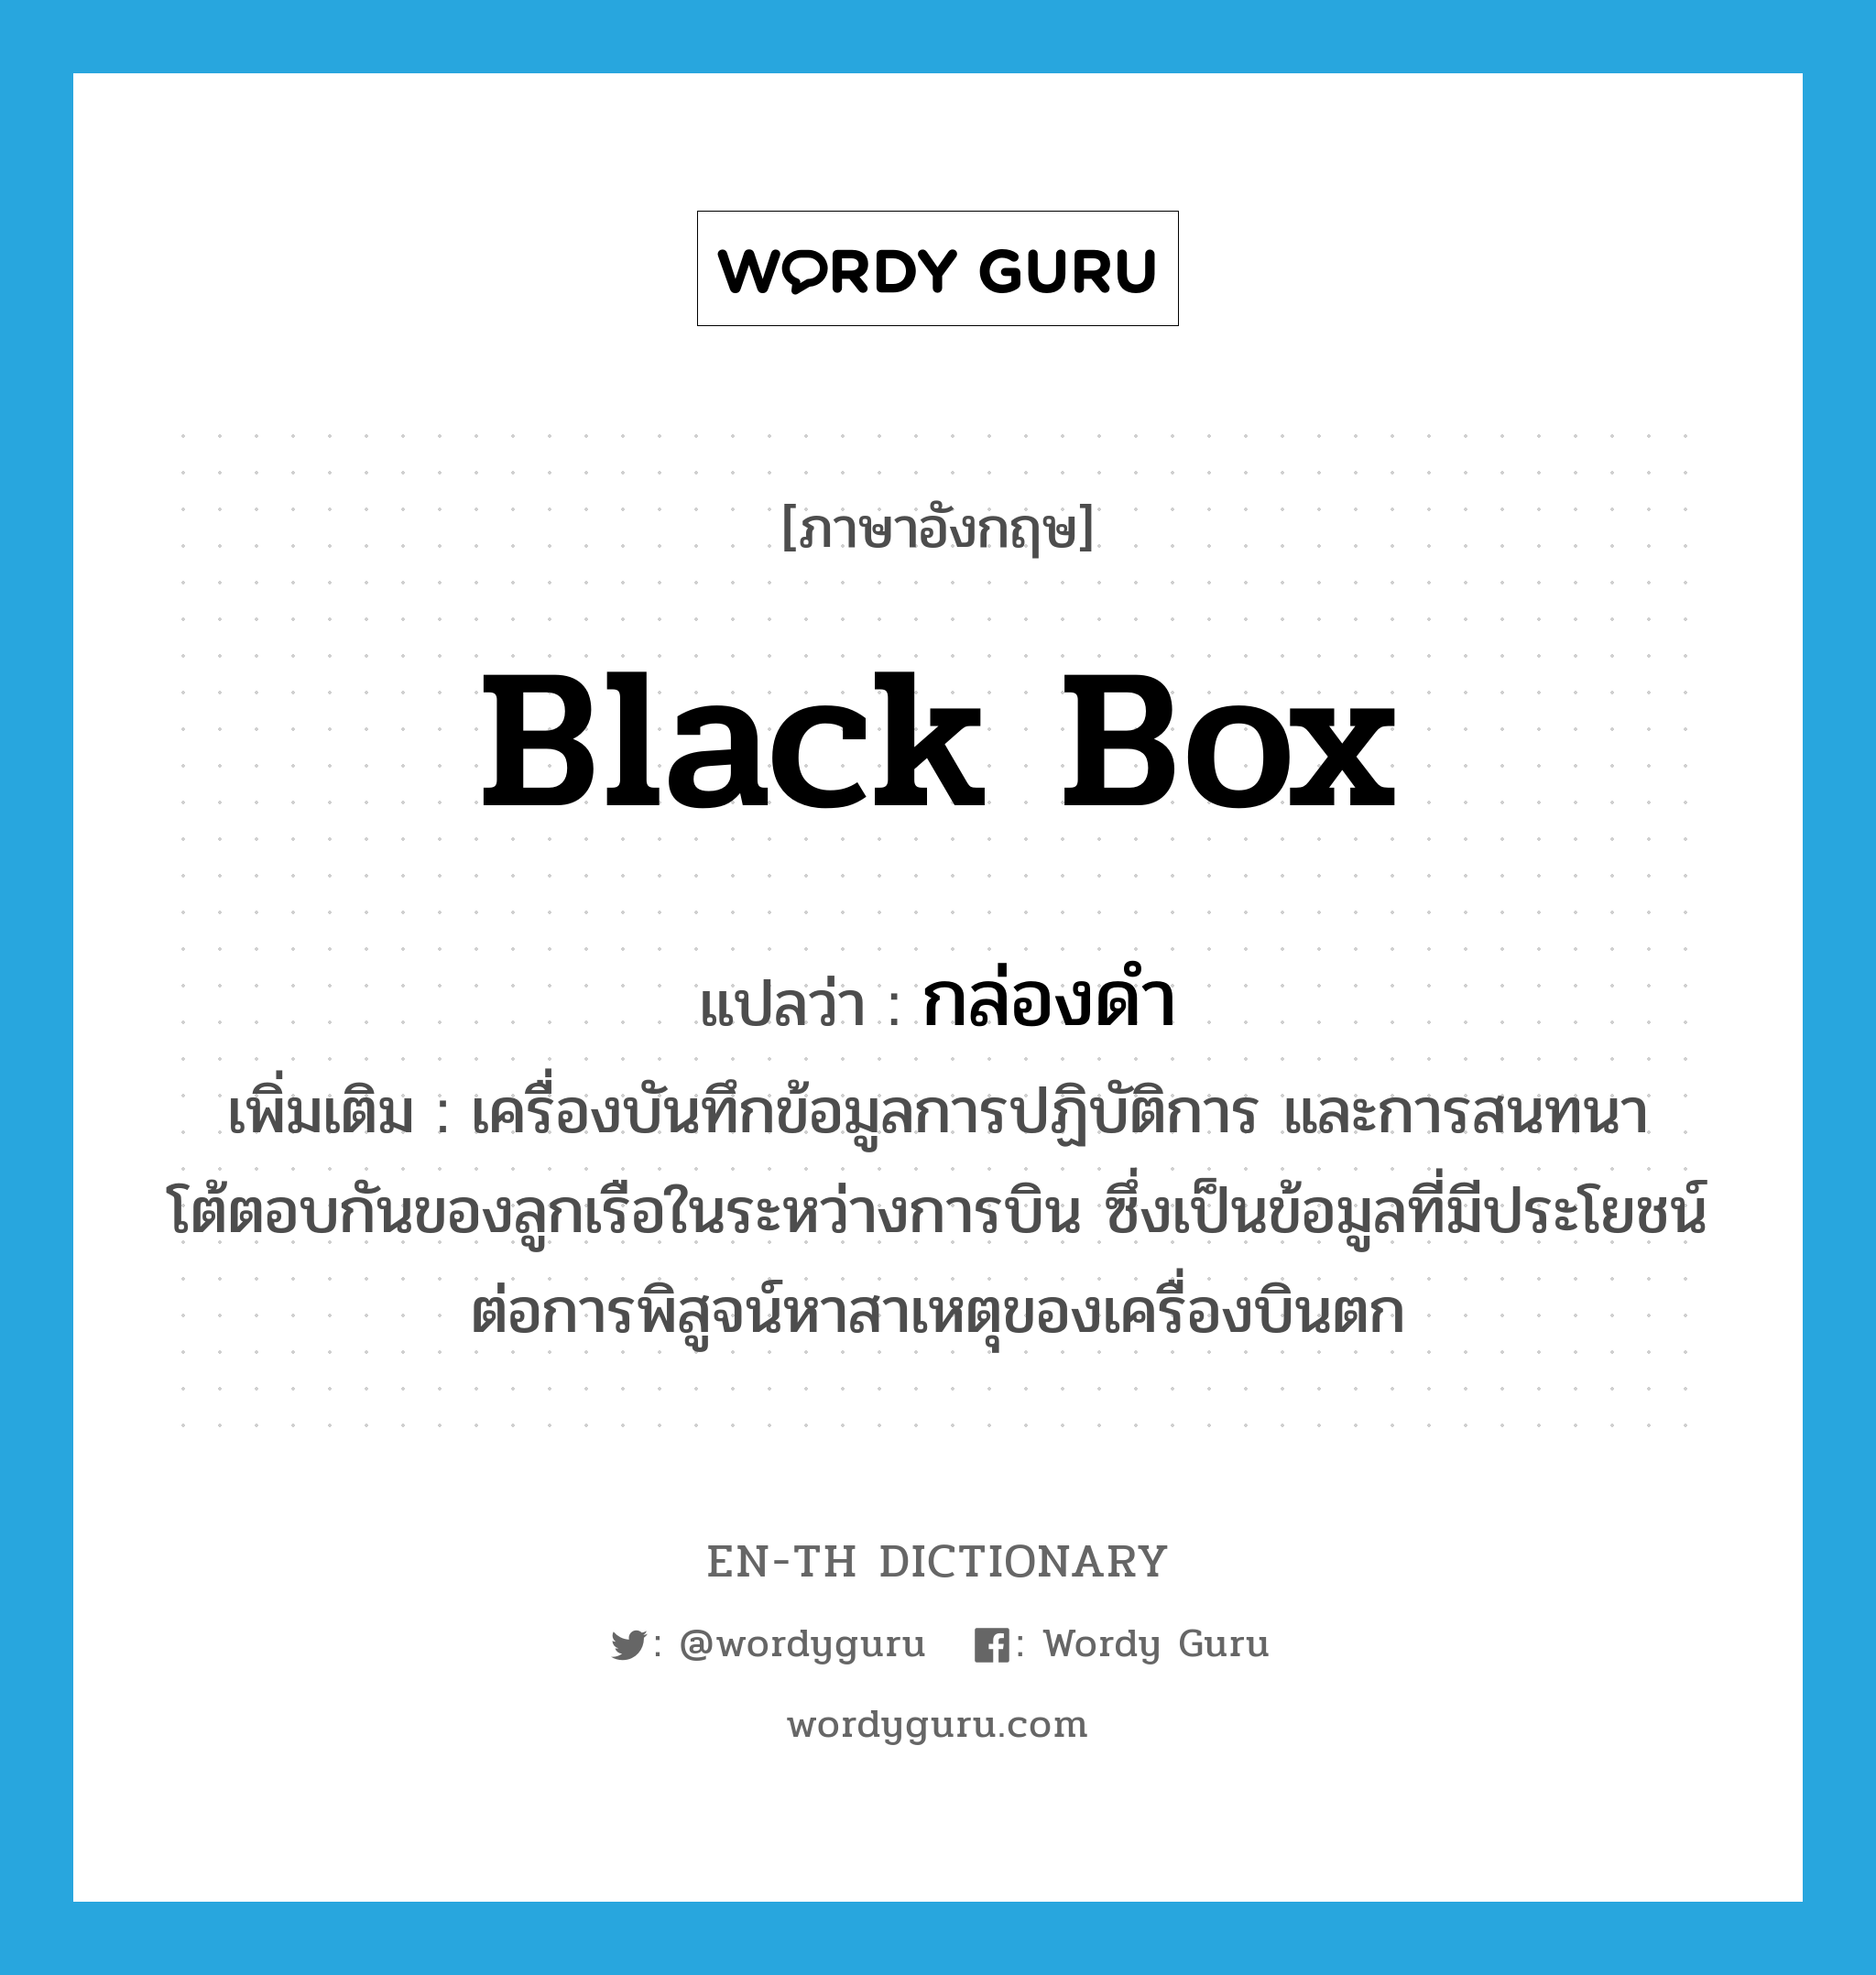 black box แปลว่า?, คำศัพท์ภาษาอังกฤษ black box แปลว่า กล่องดำ ประเภท N เพิ่มเติม เครื่องบันทึกข้อมูลการปฏิบัติการ และการสนทนาโต้ตอบกันของลูกเรือในระหว่างการบิน ซึ่งเป็นข้อมูลที่มีประโยชน์ต่อการพิสูจน์หาสาเหตุของเครื่องบินตก หมวด N